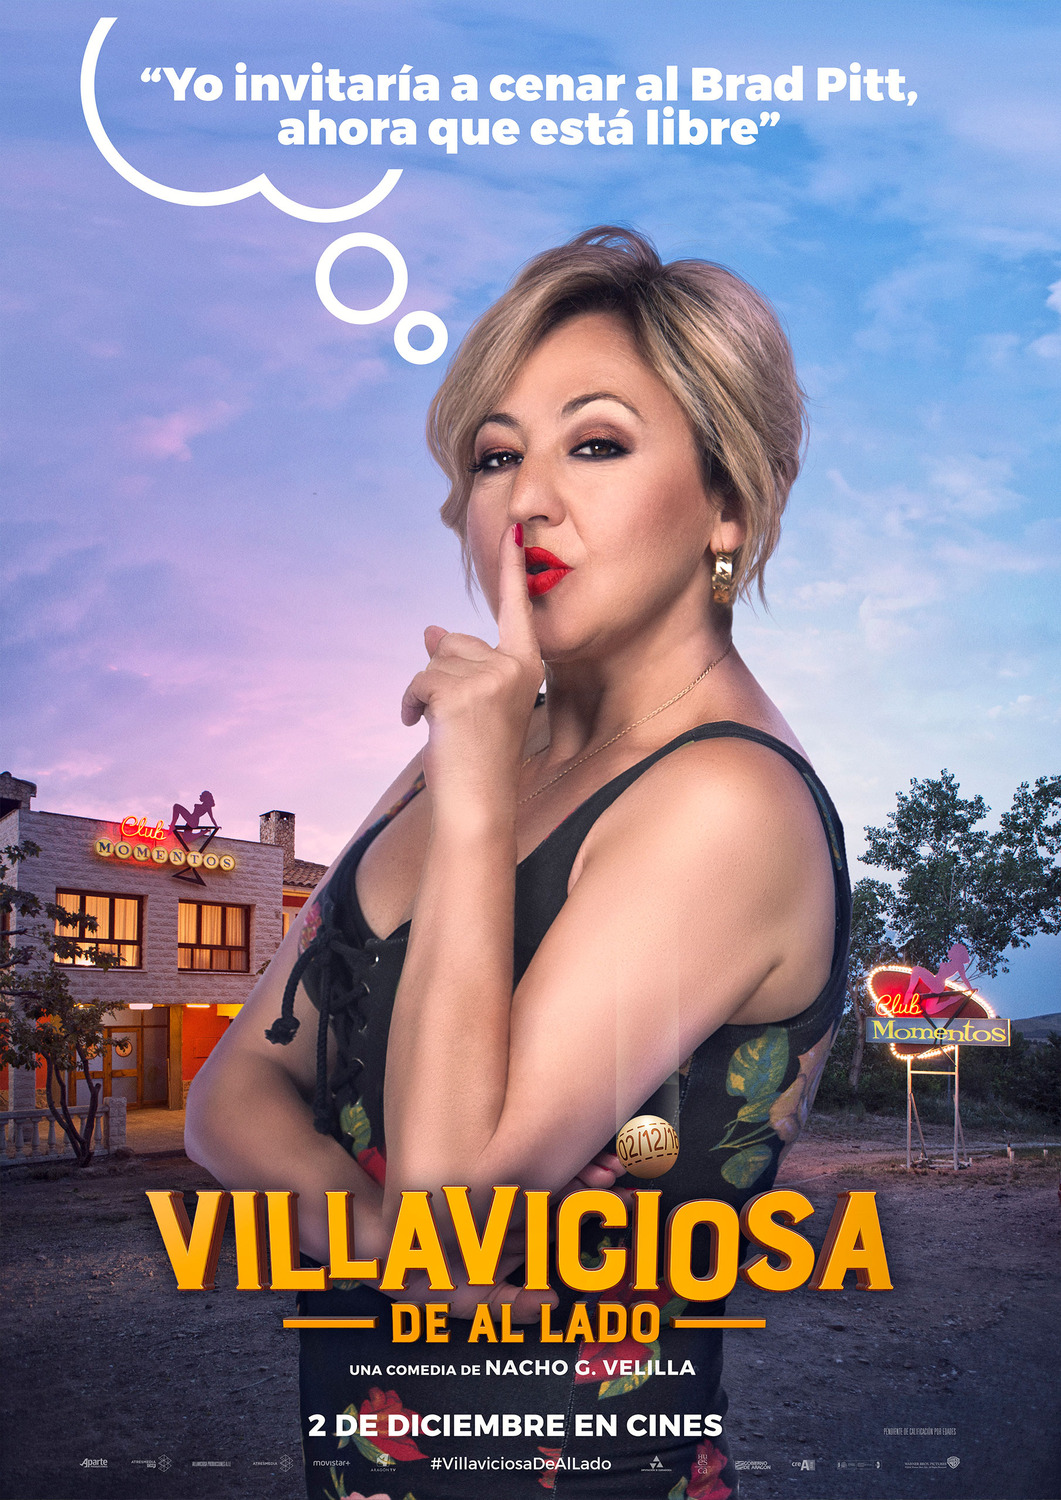 Extra Large Movie Poster Image for Villaviciosa de al lado (#3 of 8)